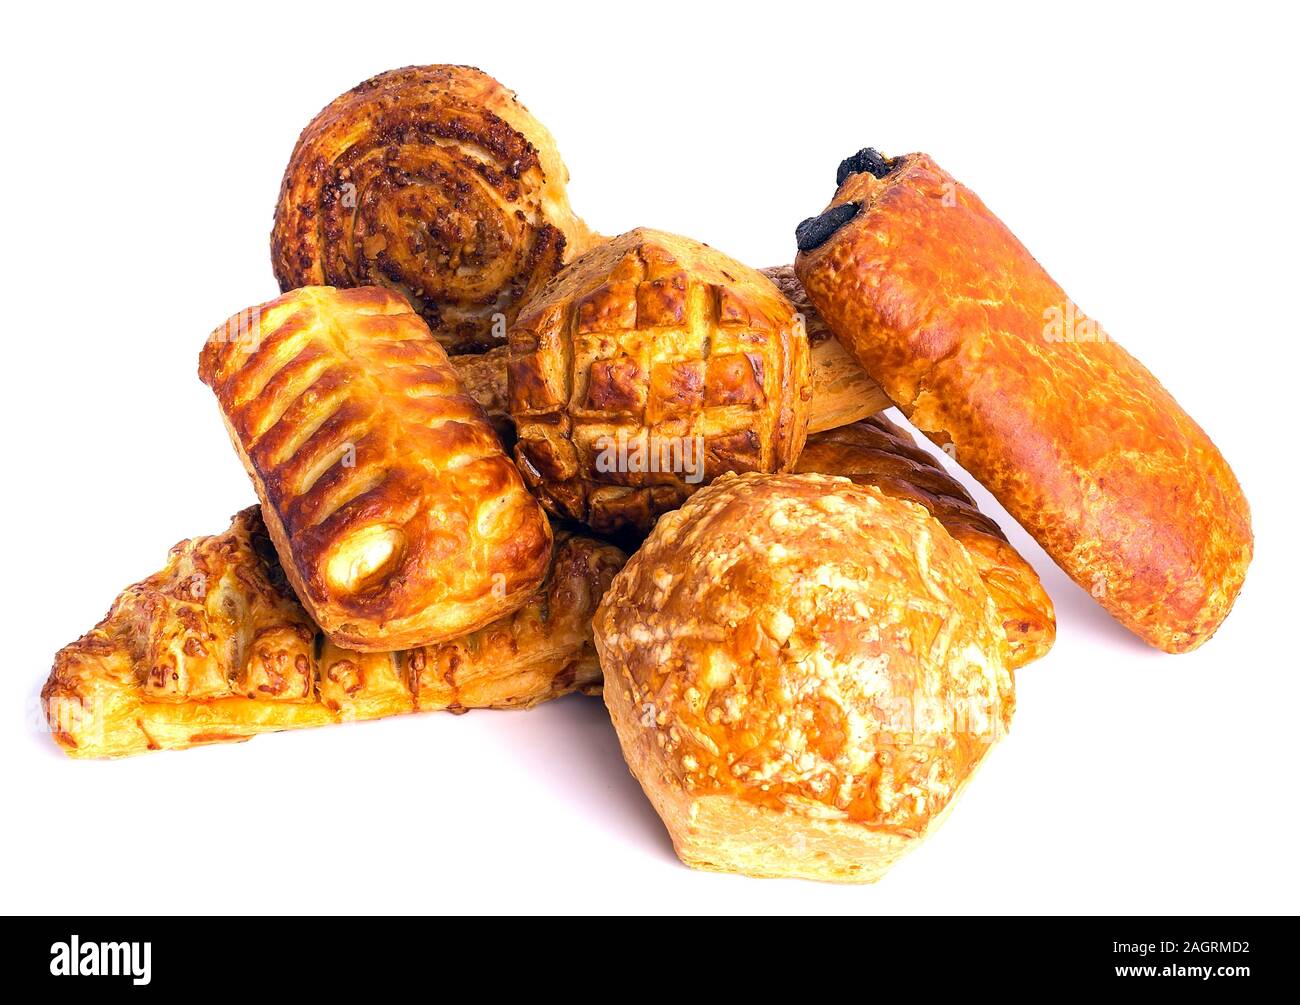 Eine Vielzahl von gebackenen Brötchen besticht durch Attraktivität, Aroma und Geschmack. Stockfoto